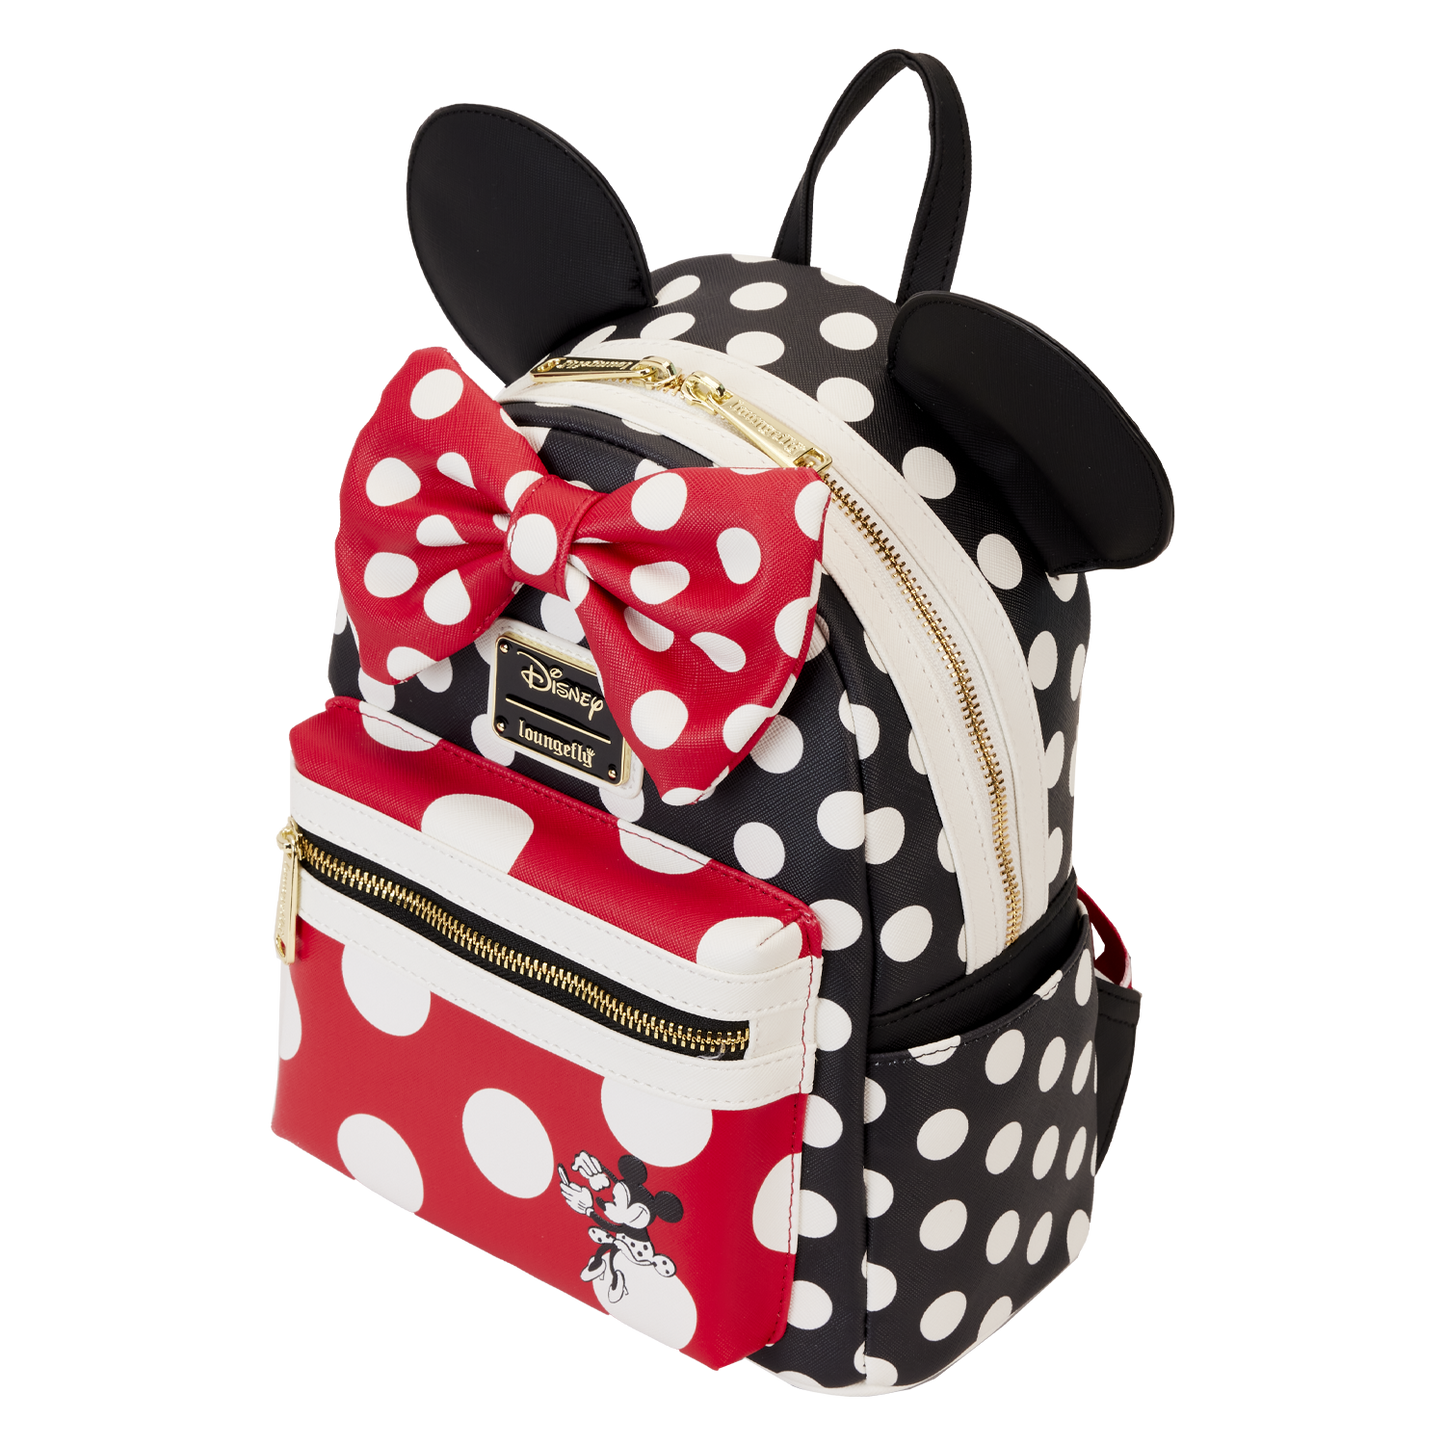 Minnie Rocks the Dots Classic Mini Backpack